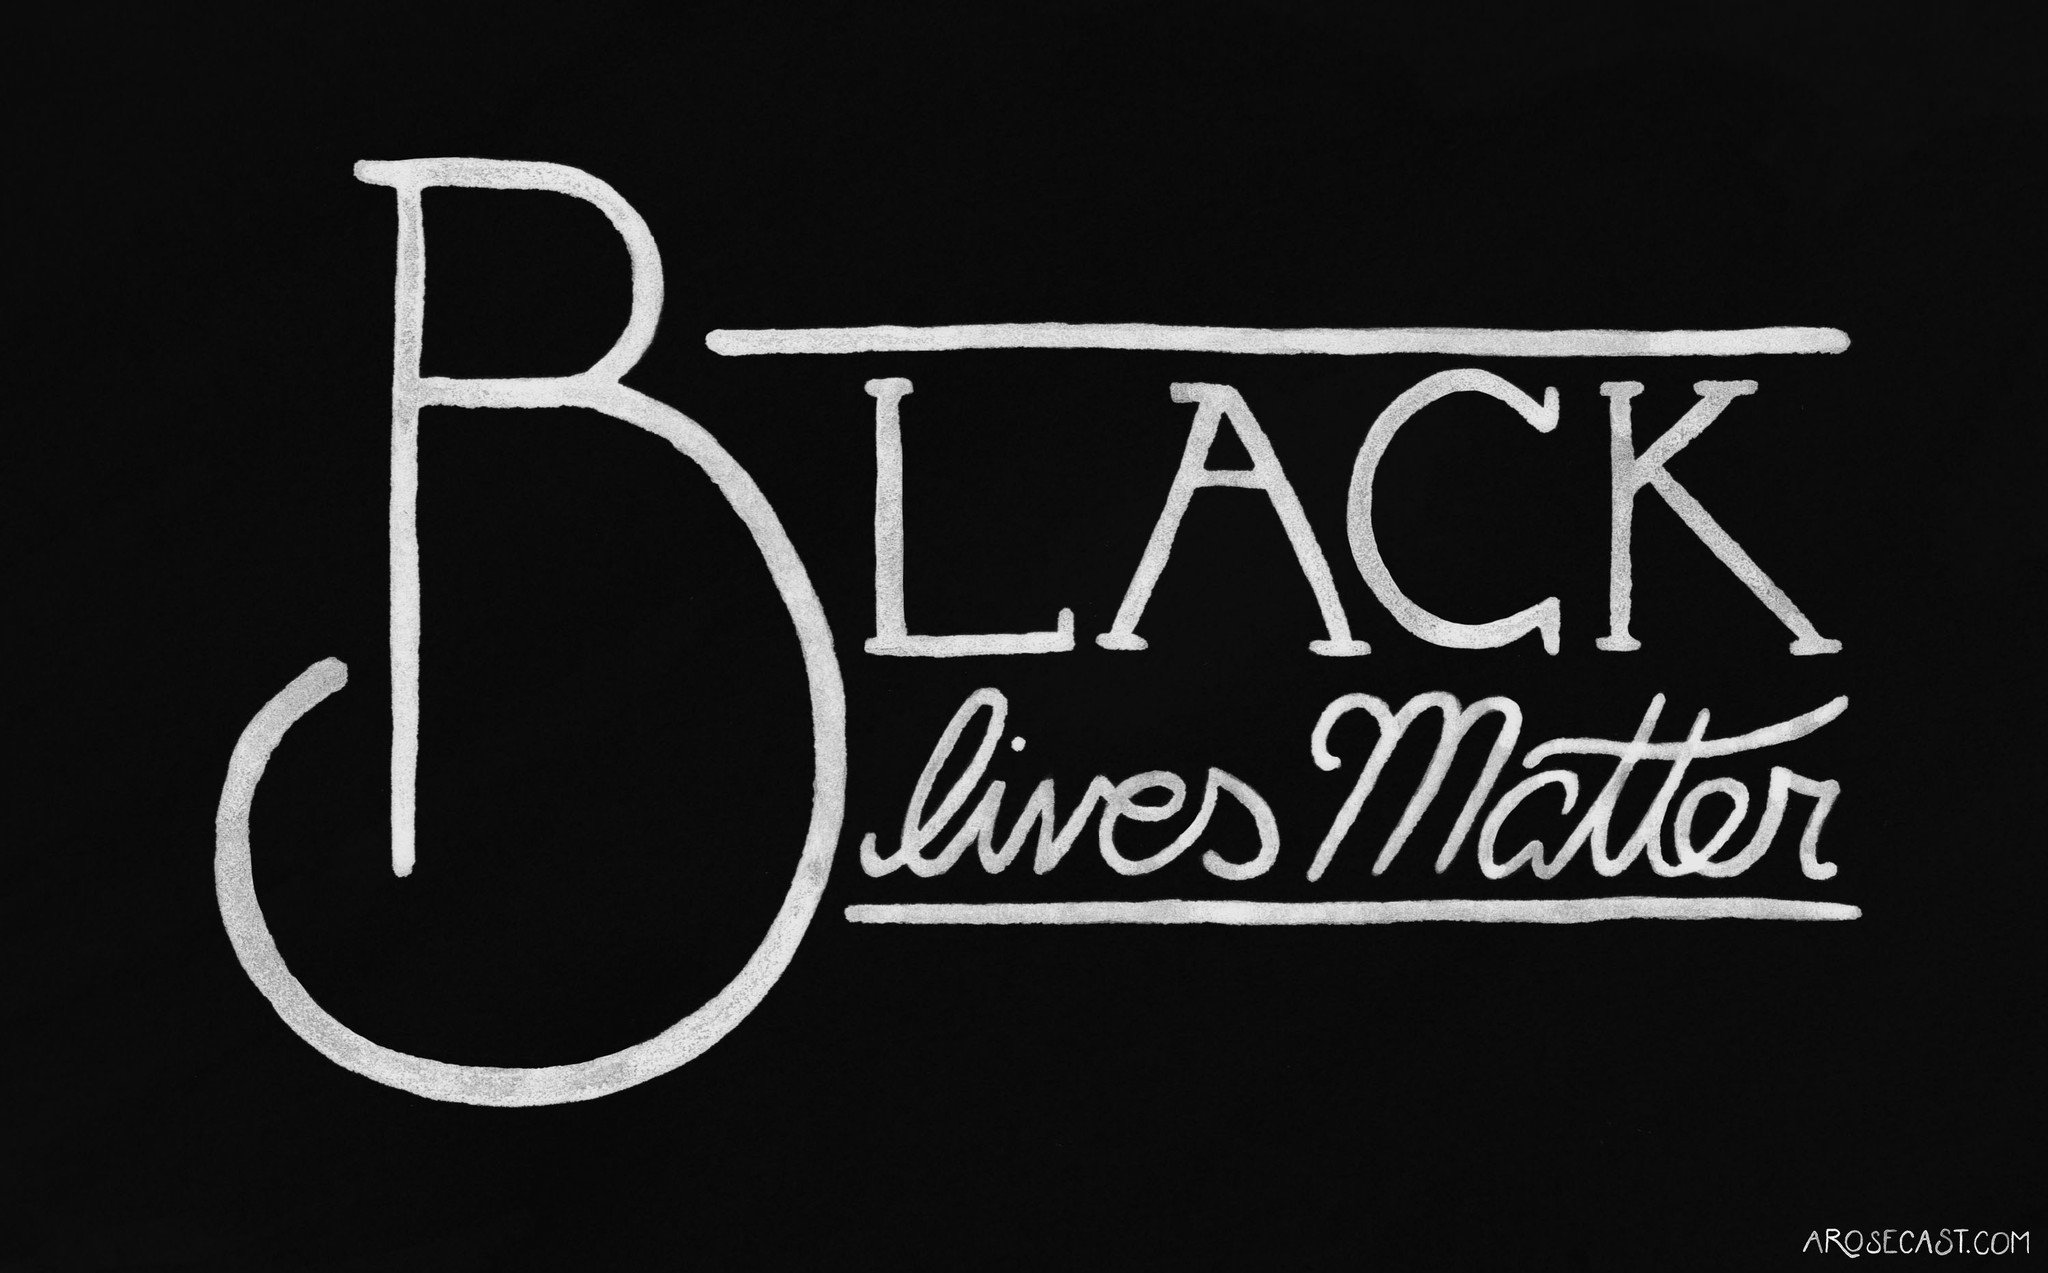 Black Lives Matter Wallpaper Images  Free Download on Freepik